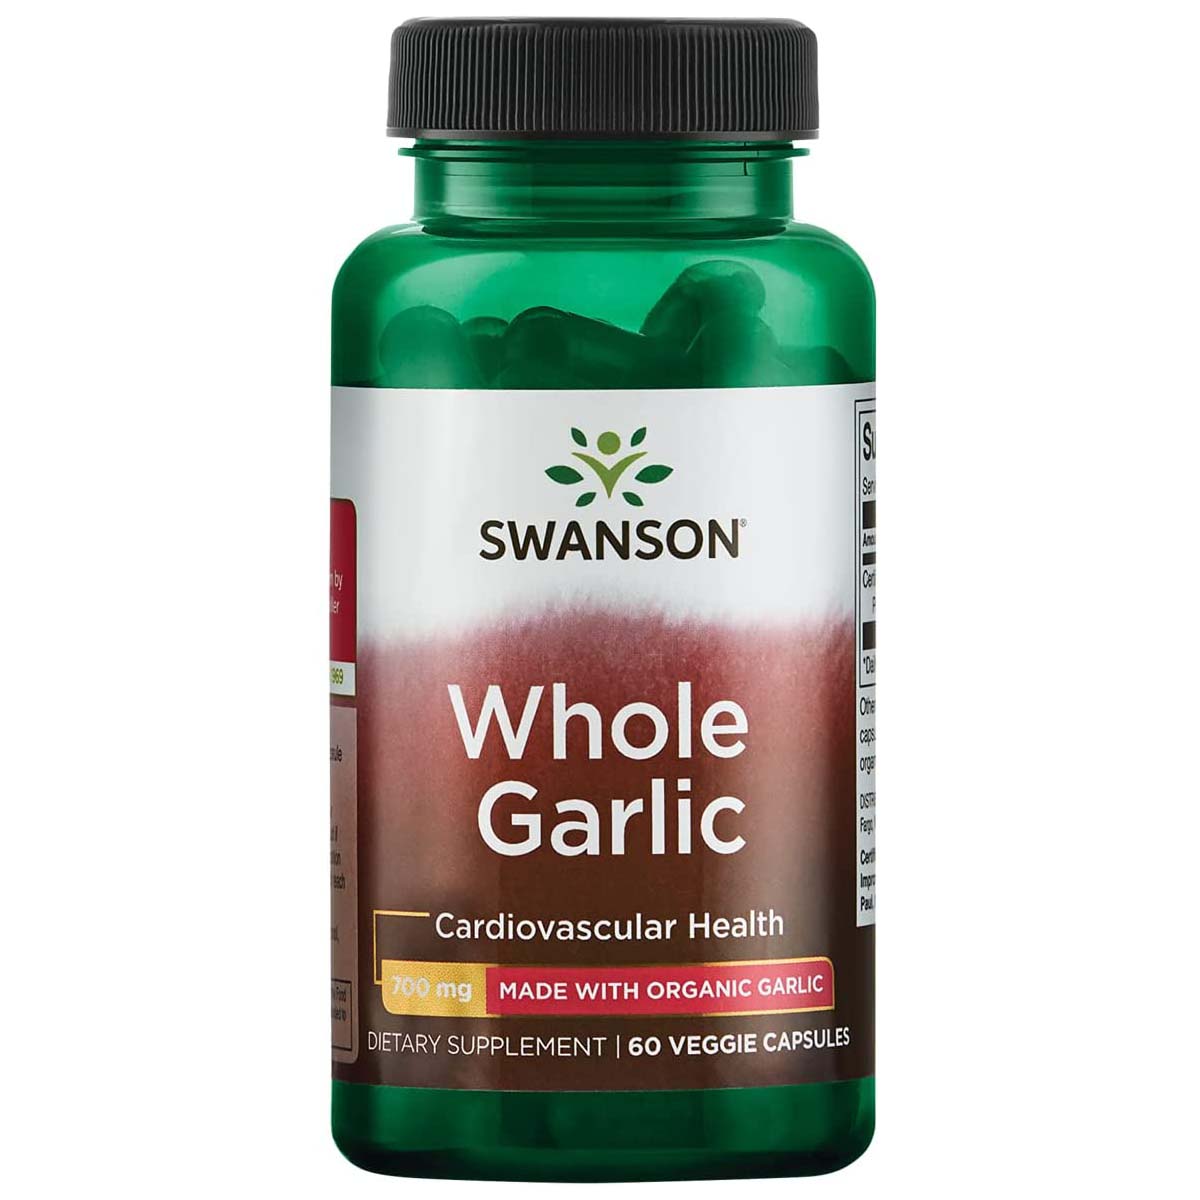 Swanson Whole Garlic, 700 mg, 60 Veggie Capsules